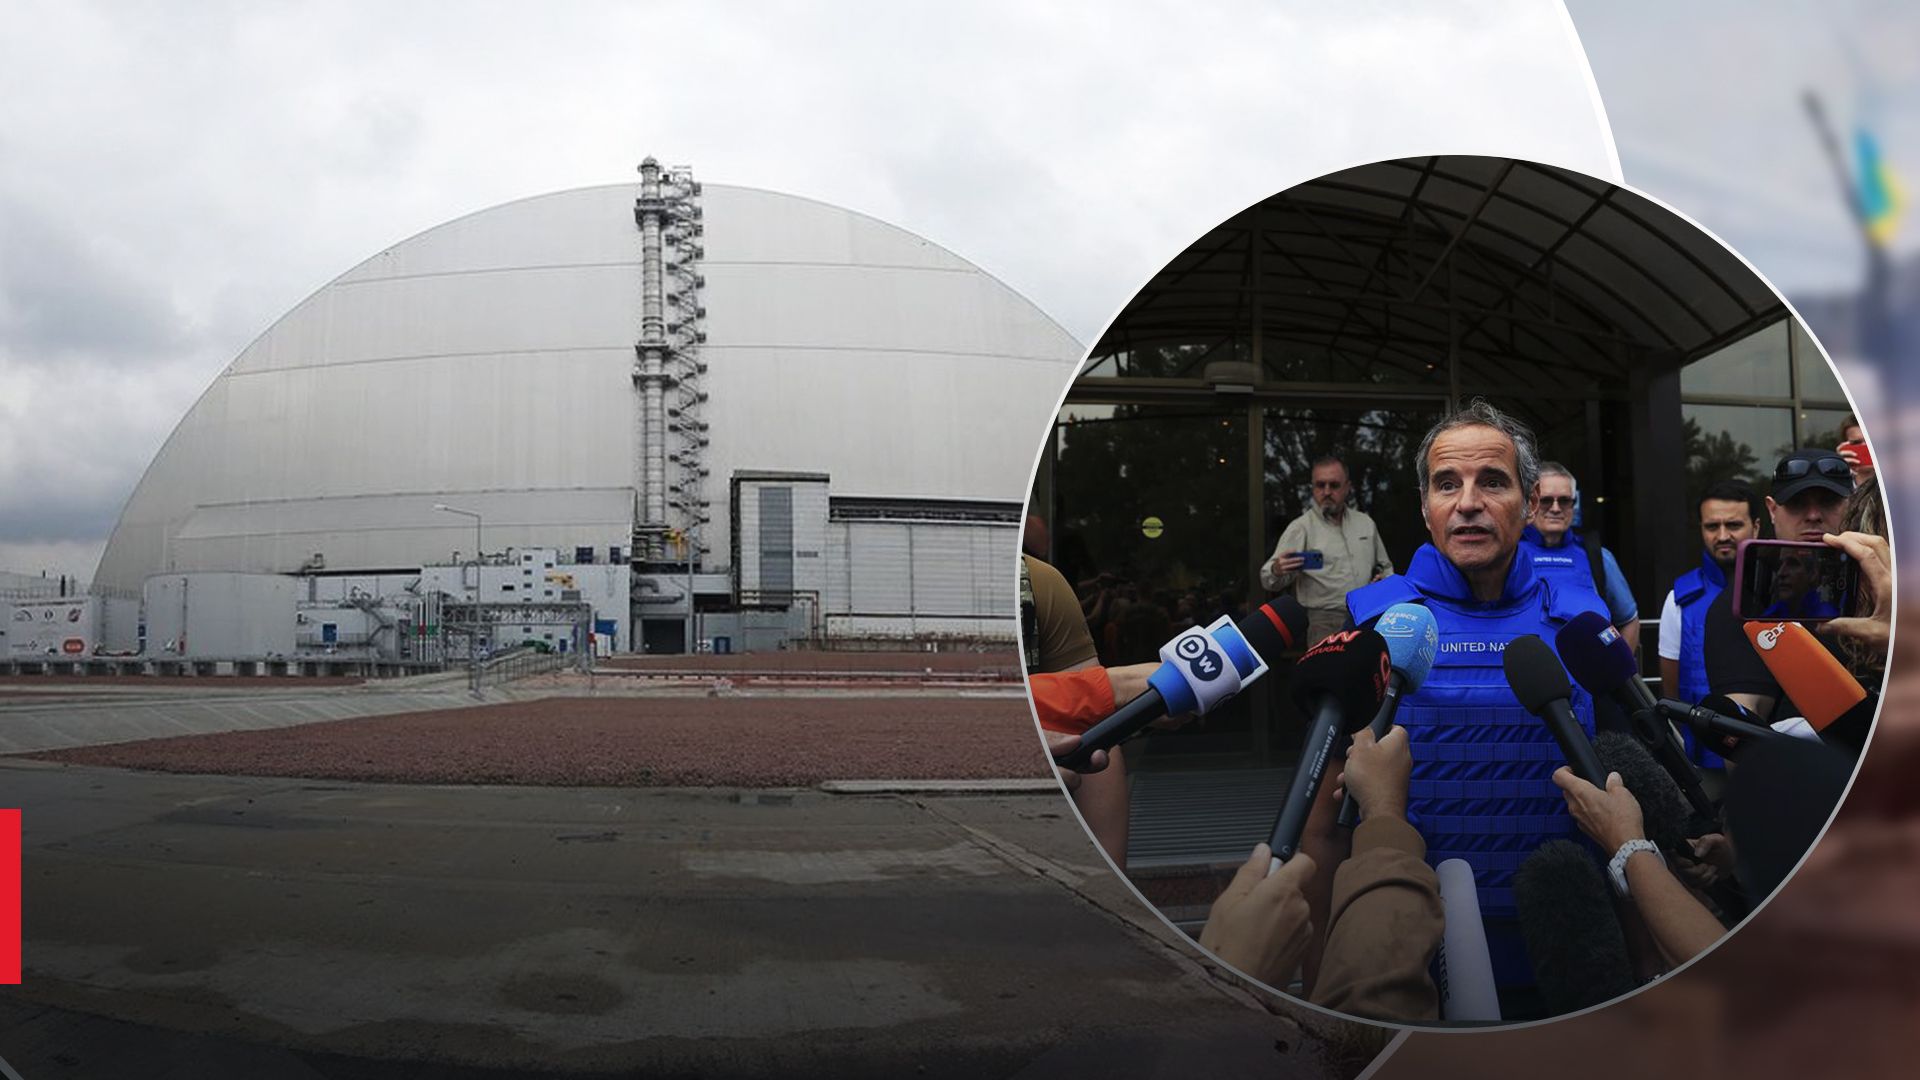 МАГАТЕ ще раз огляне ядерні об'єкти в Укрїні